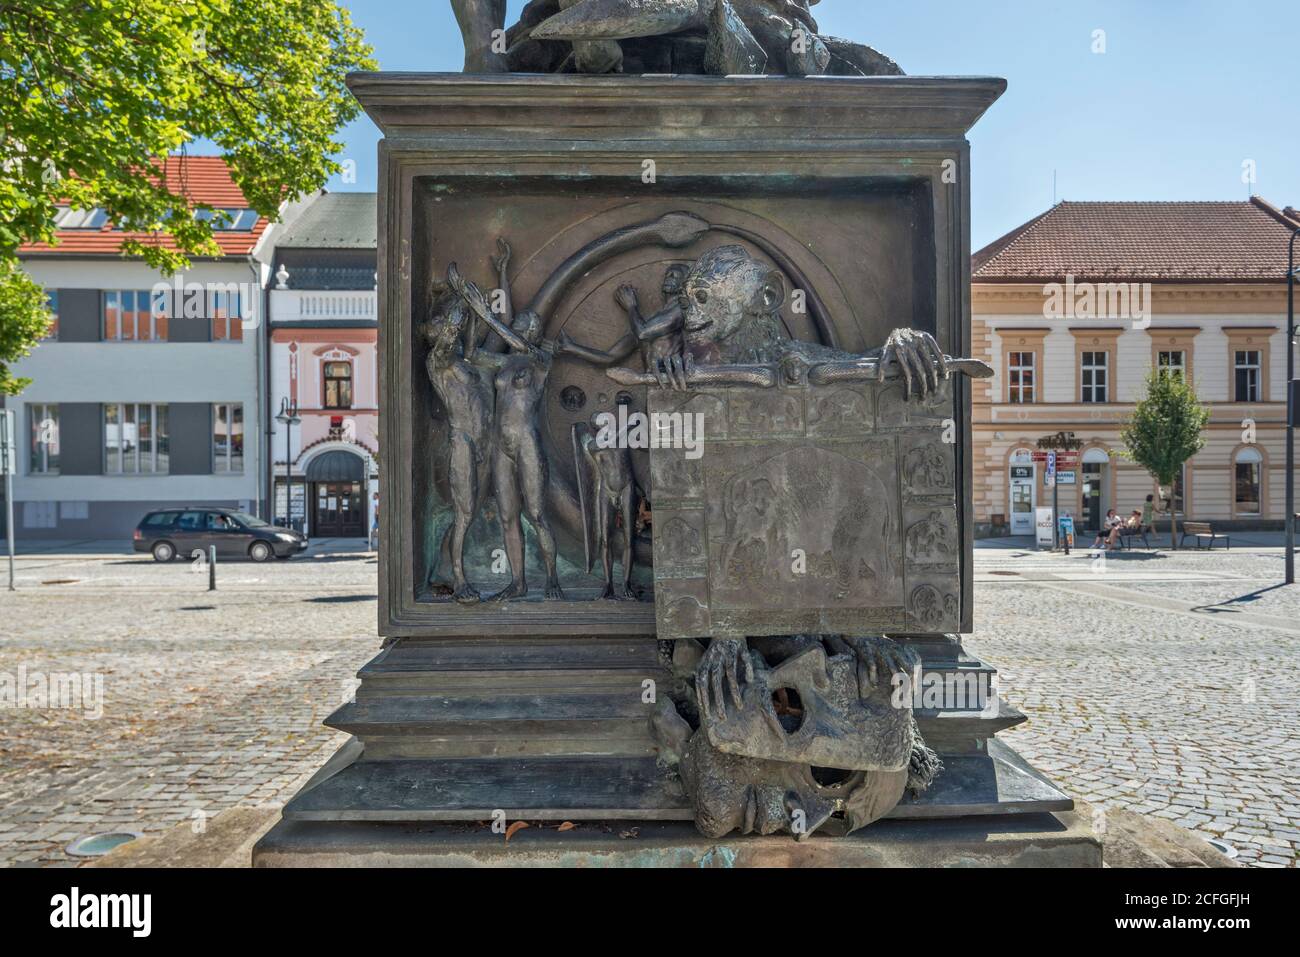 Denkmal in Masarykovo namesti, zentraler Platz in der Stadt Uherský Brod, Zlin Region, Slovacko (Mährische Slowakei), Tschechische Republik Stockfoto